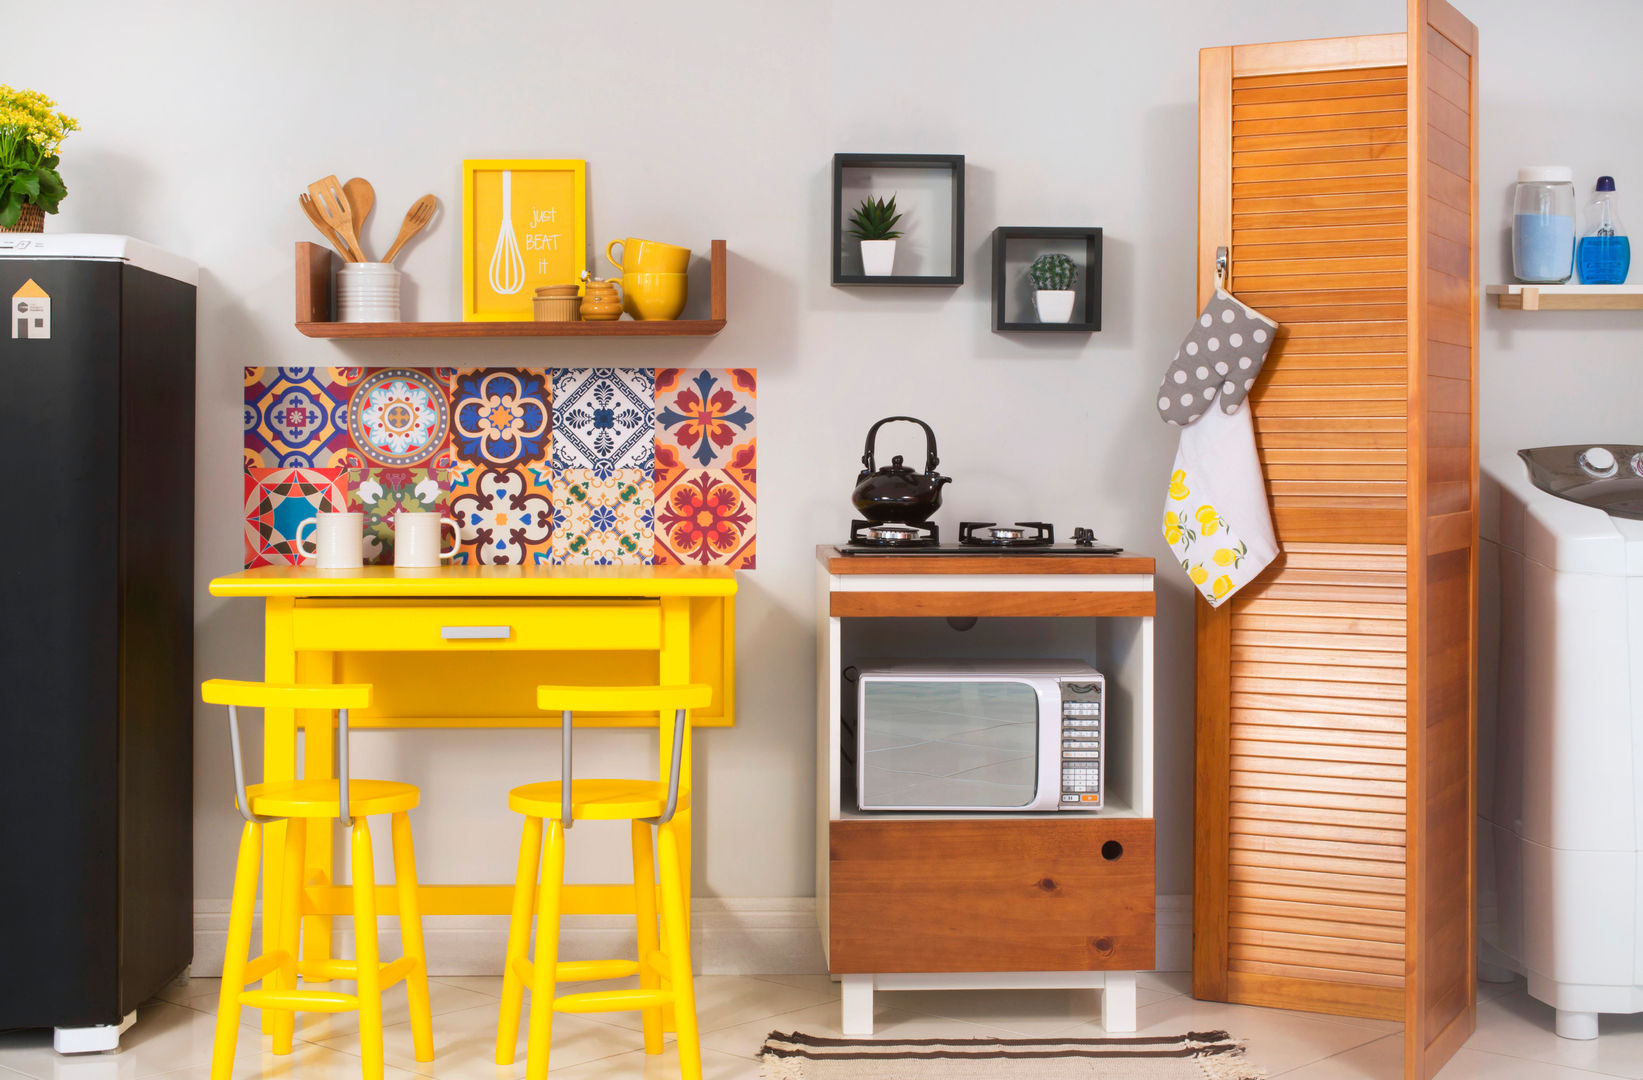 Cozinha integrada com lavanderia Meu Móvel de Madeira Cozinhas minimalistas Madeira maciça Multi colorido Armários e estantes